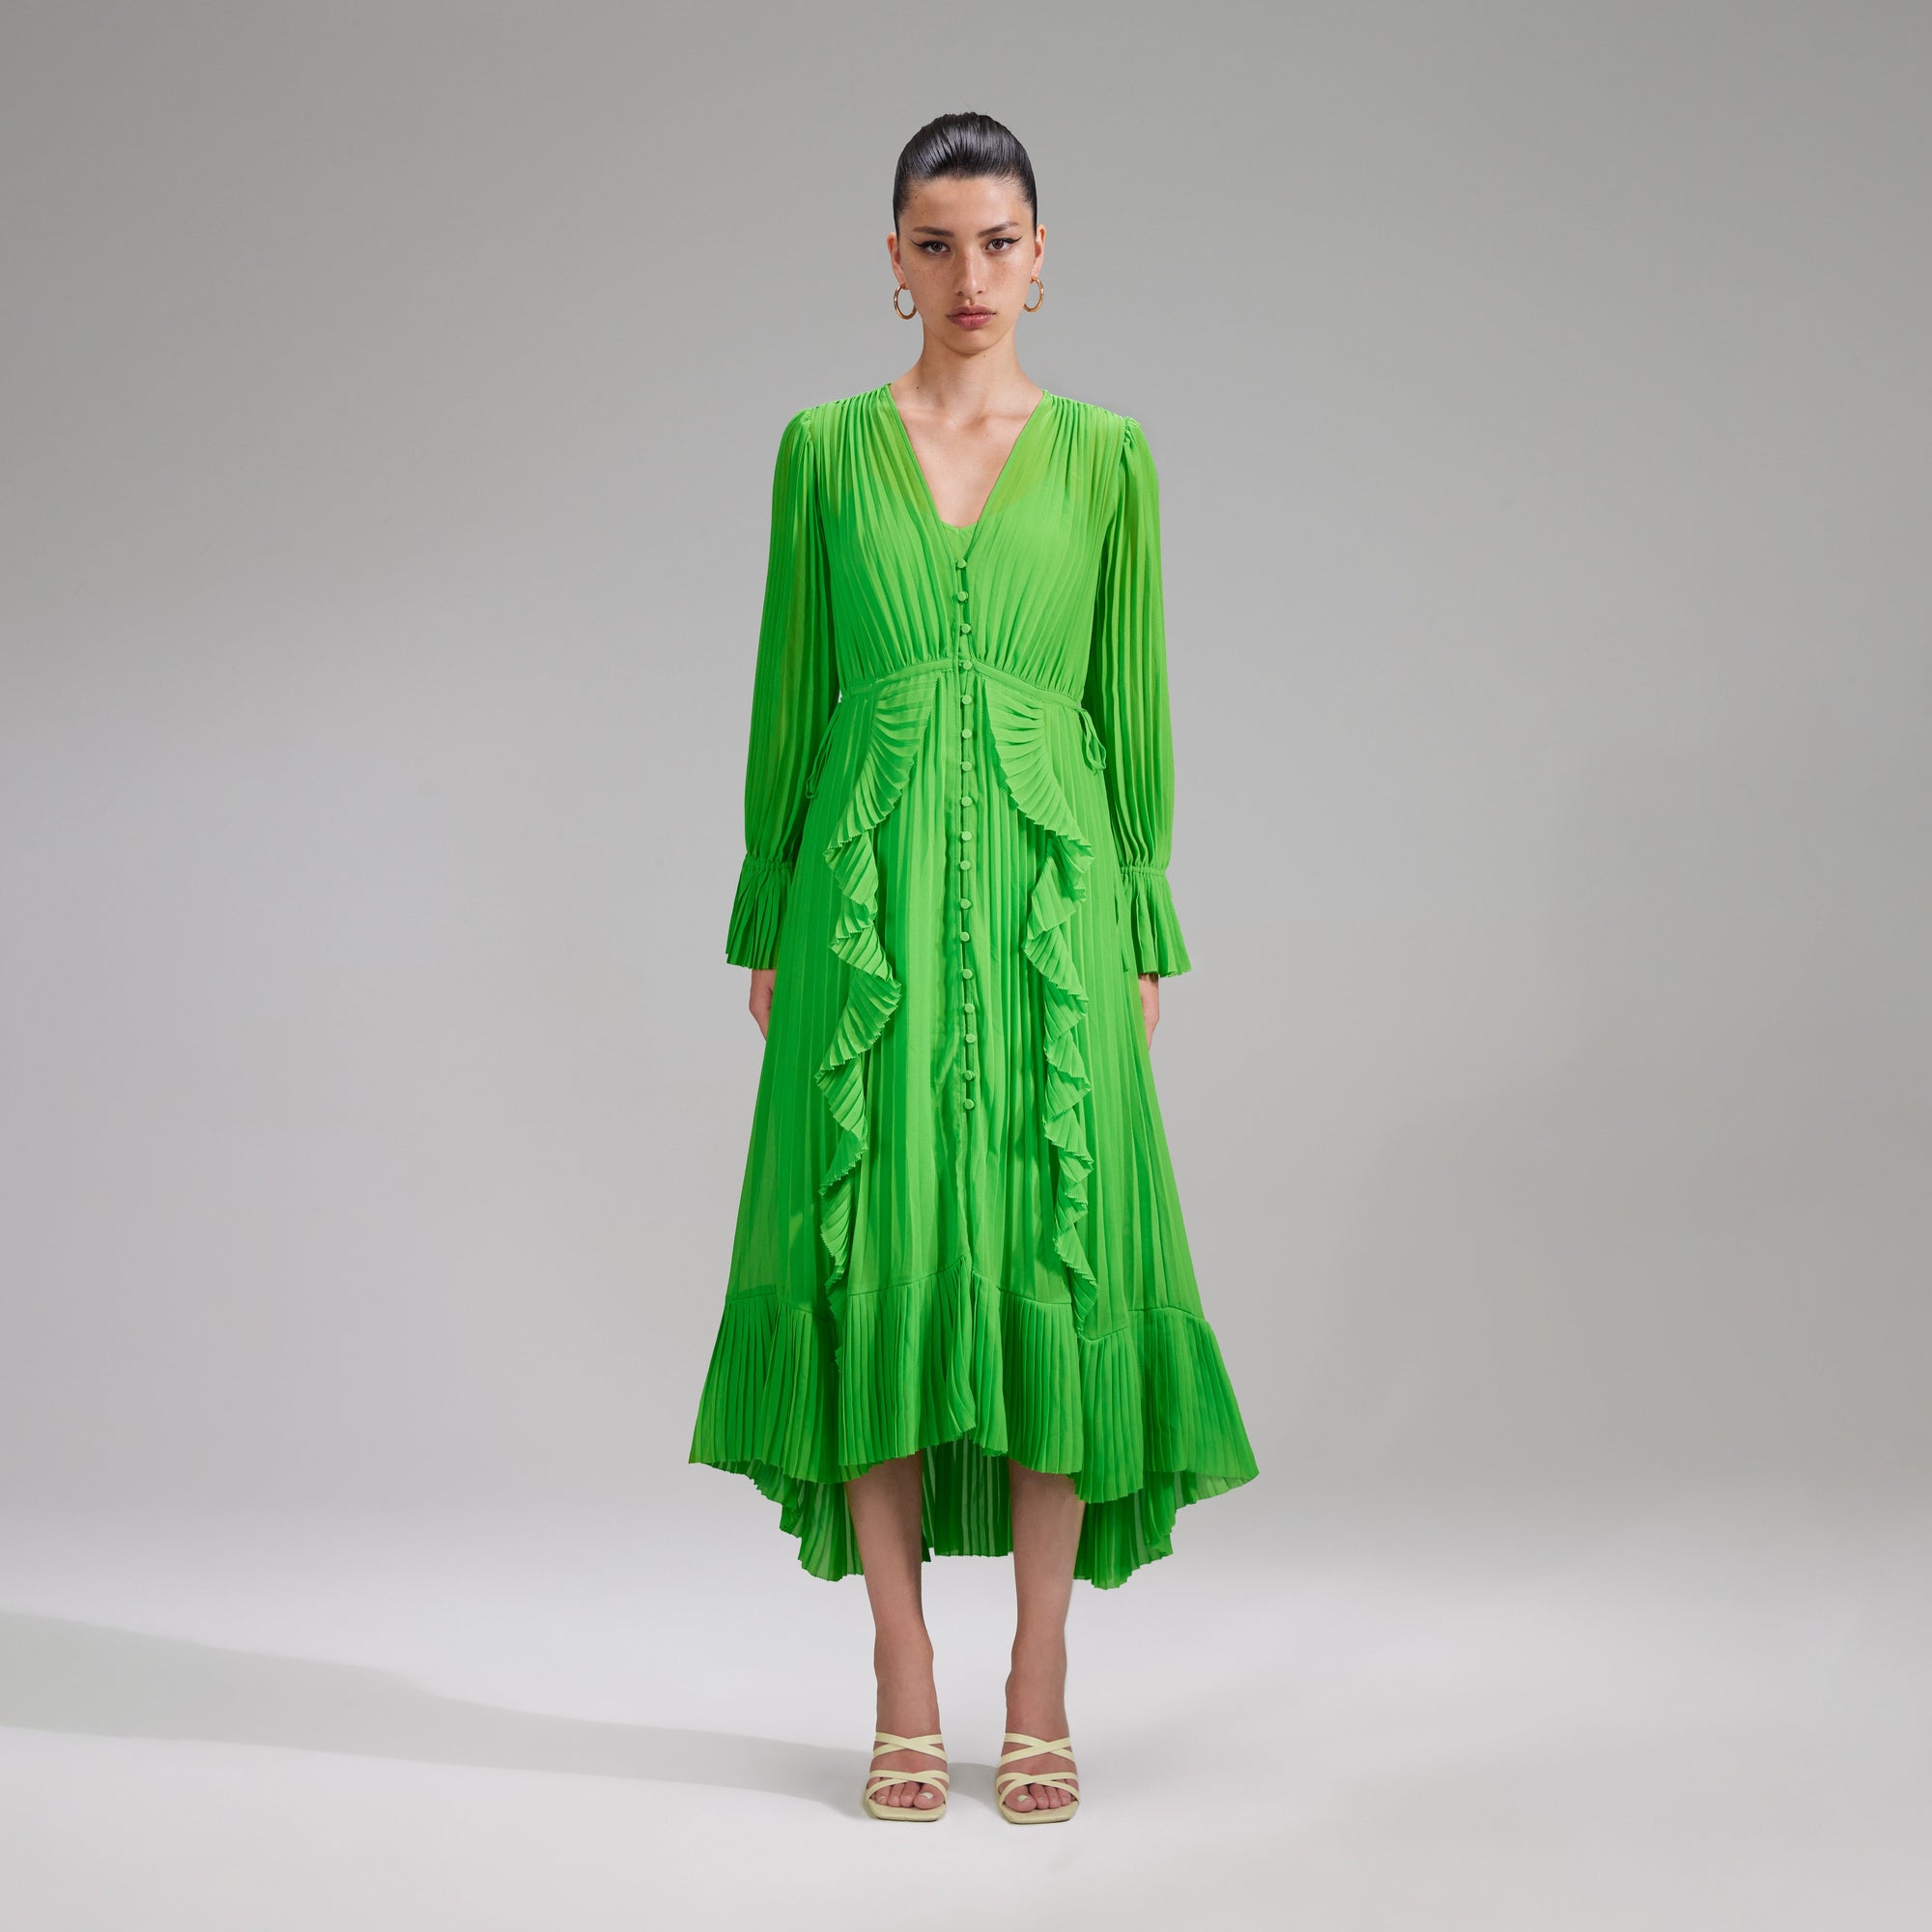 A woman wearing the Green Chiffon Ruffle Midi Dress